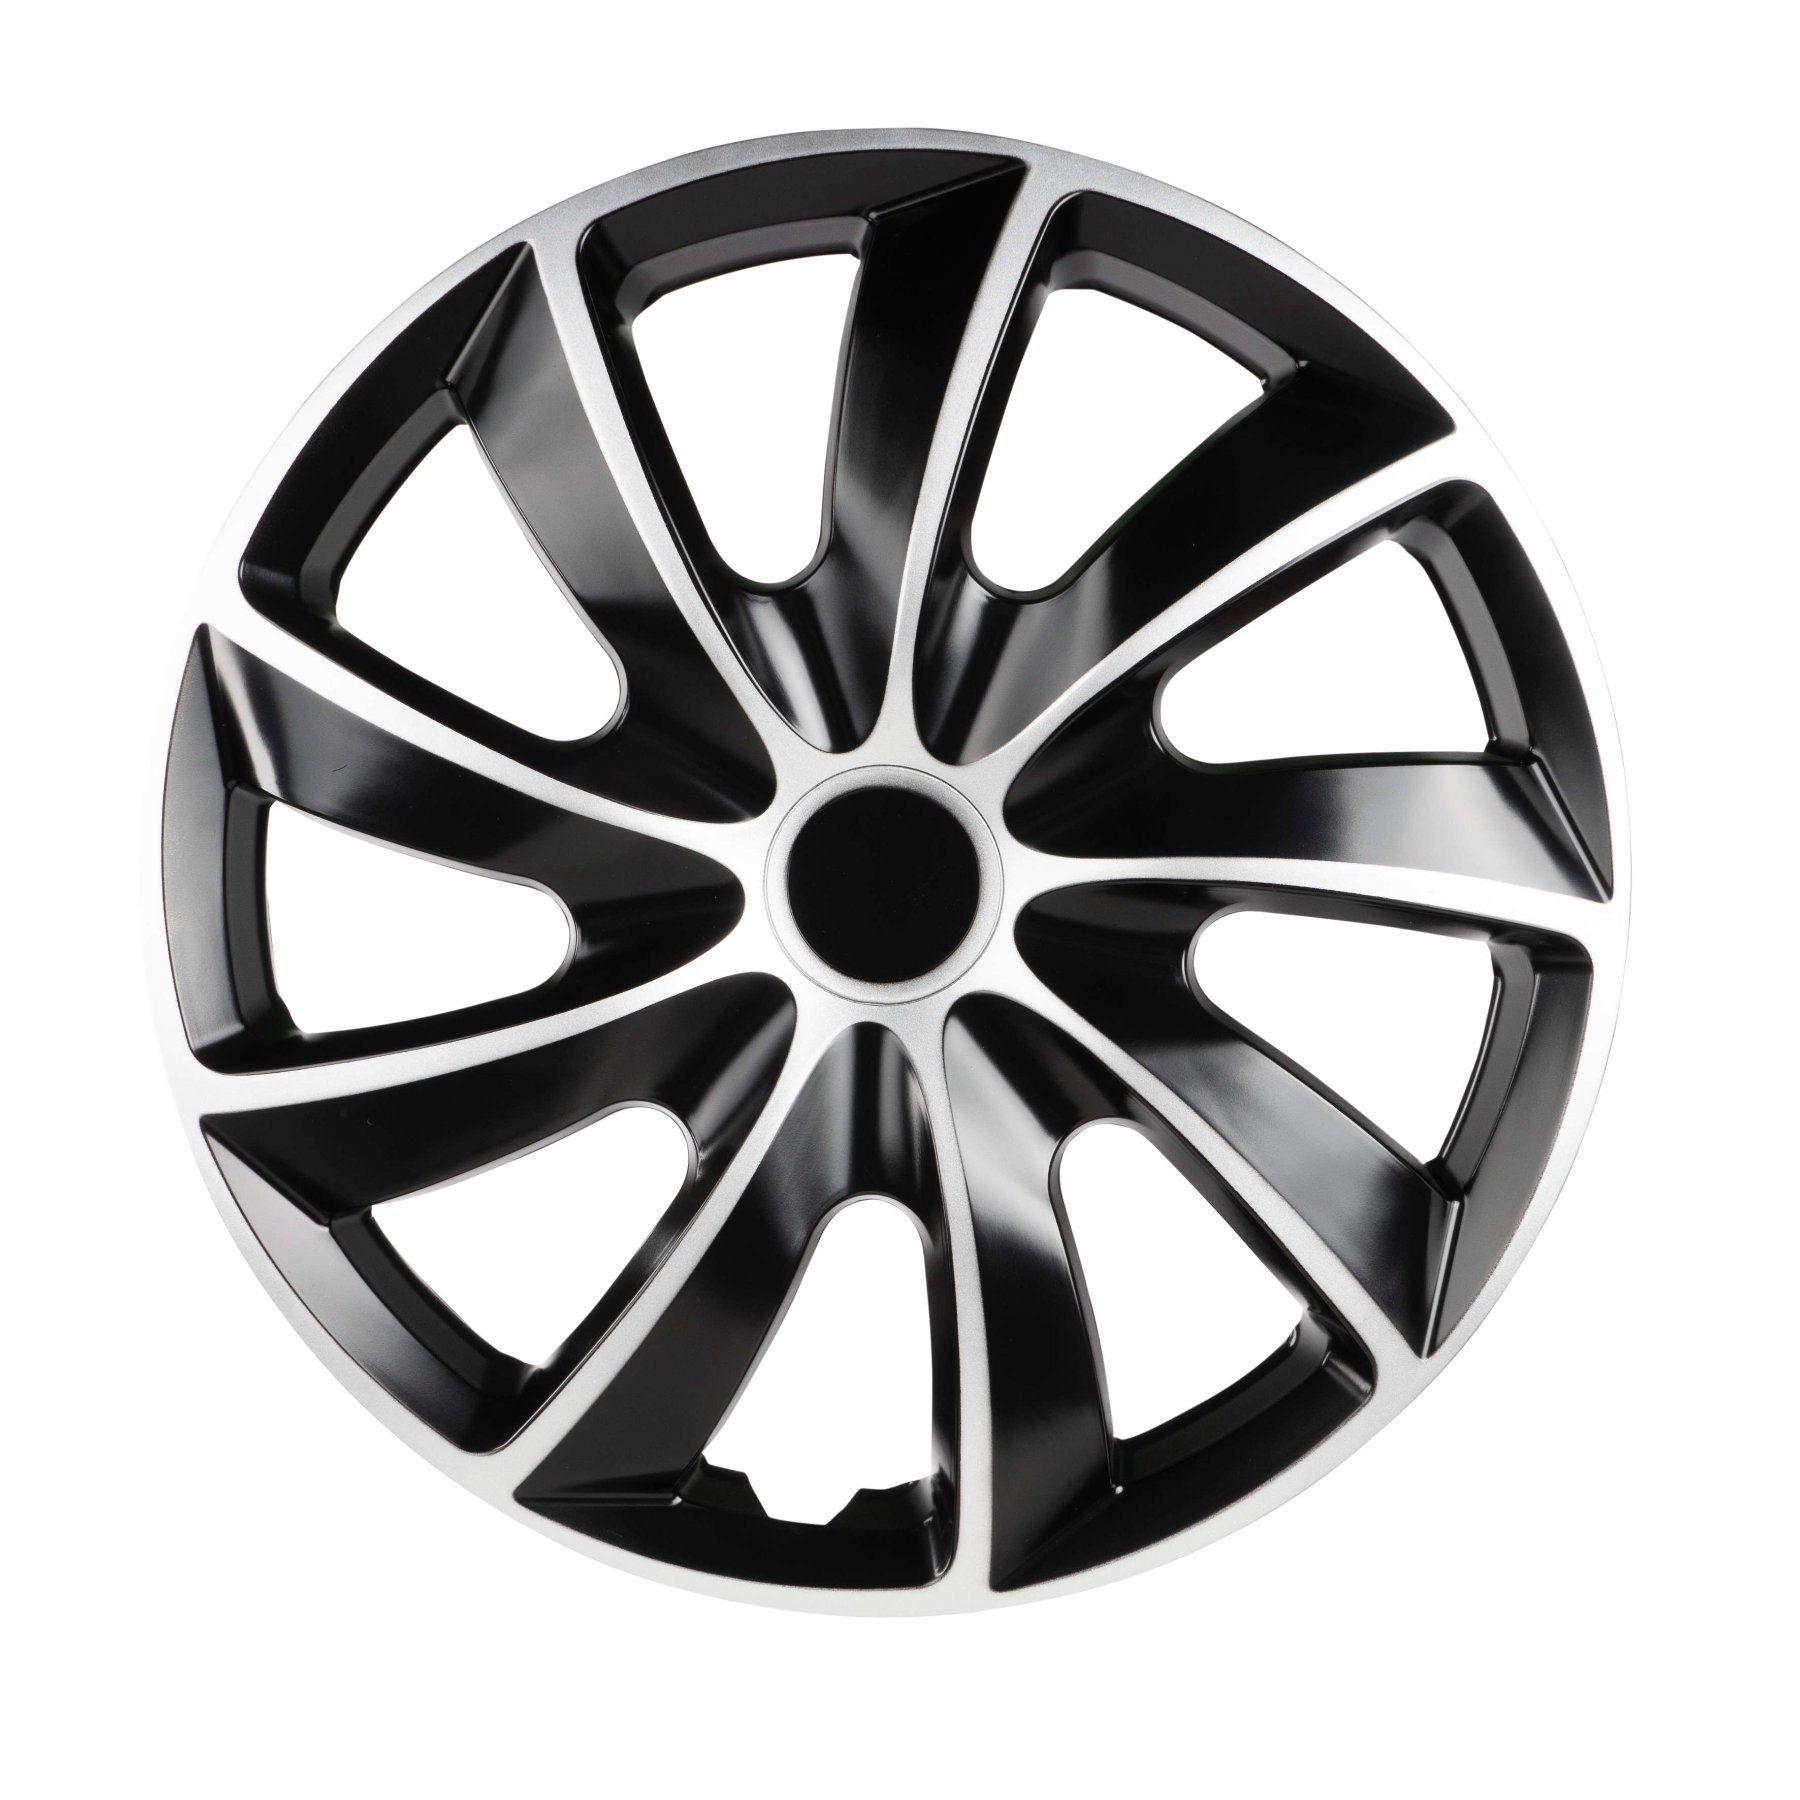 Wheel covers Aero Bicolor 15", 4 piece black/silver